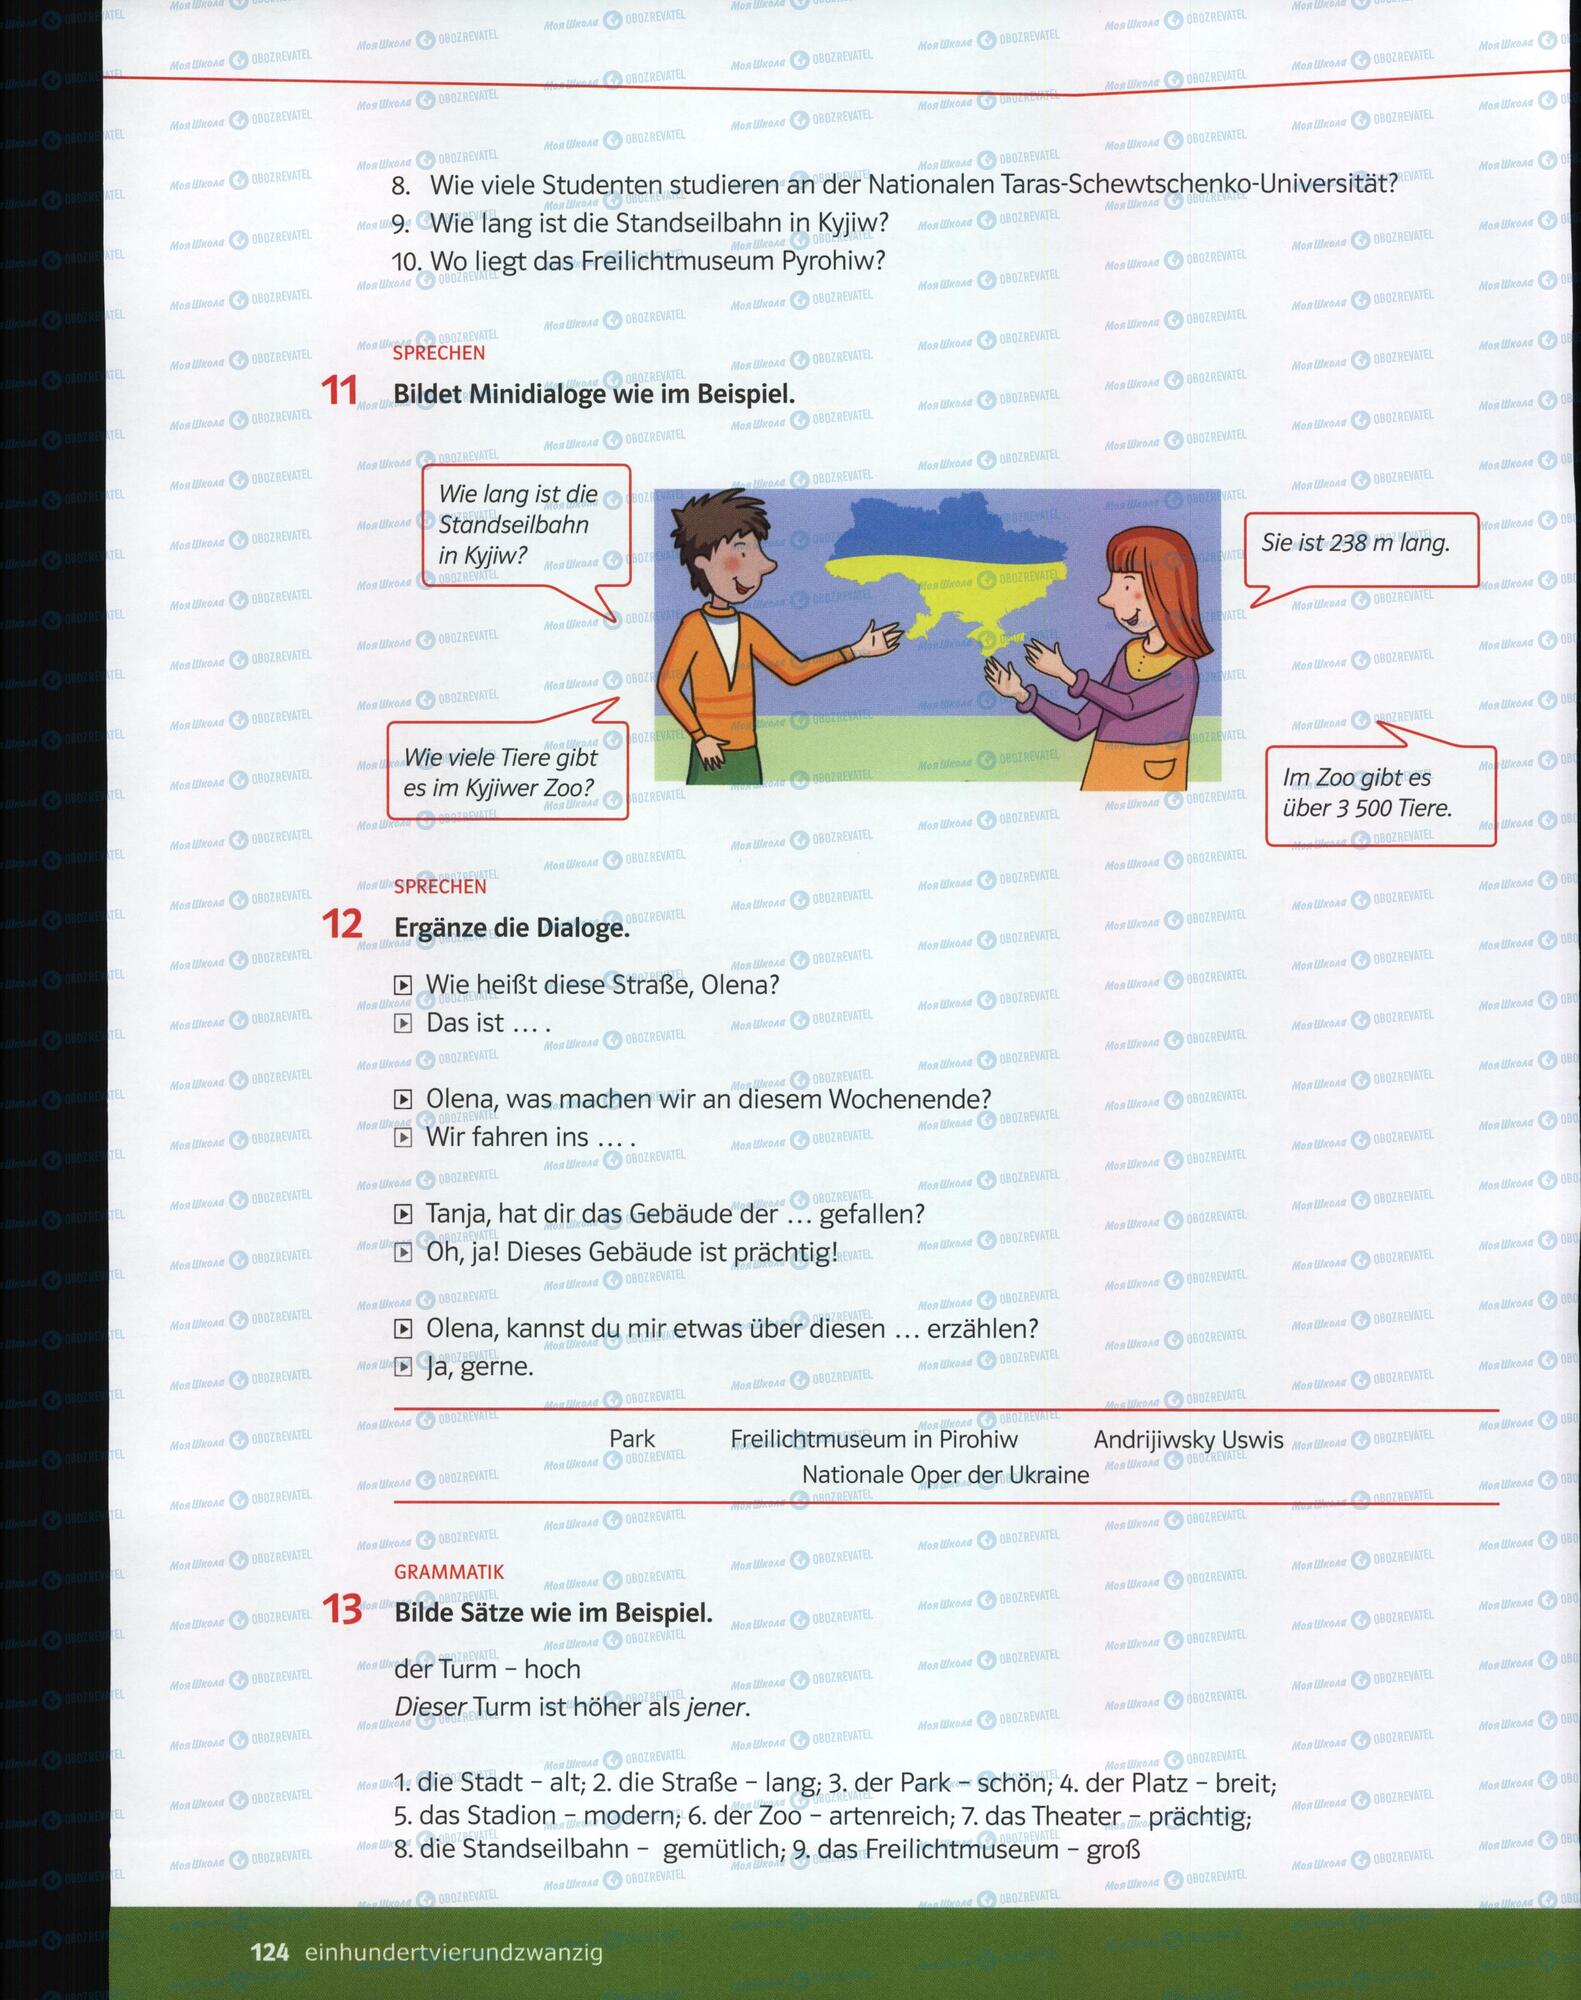 Підручники Німецька мова 6 клас сторінка 124